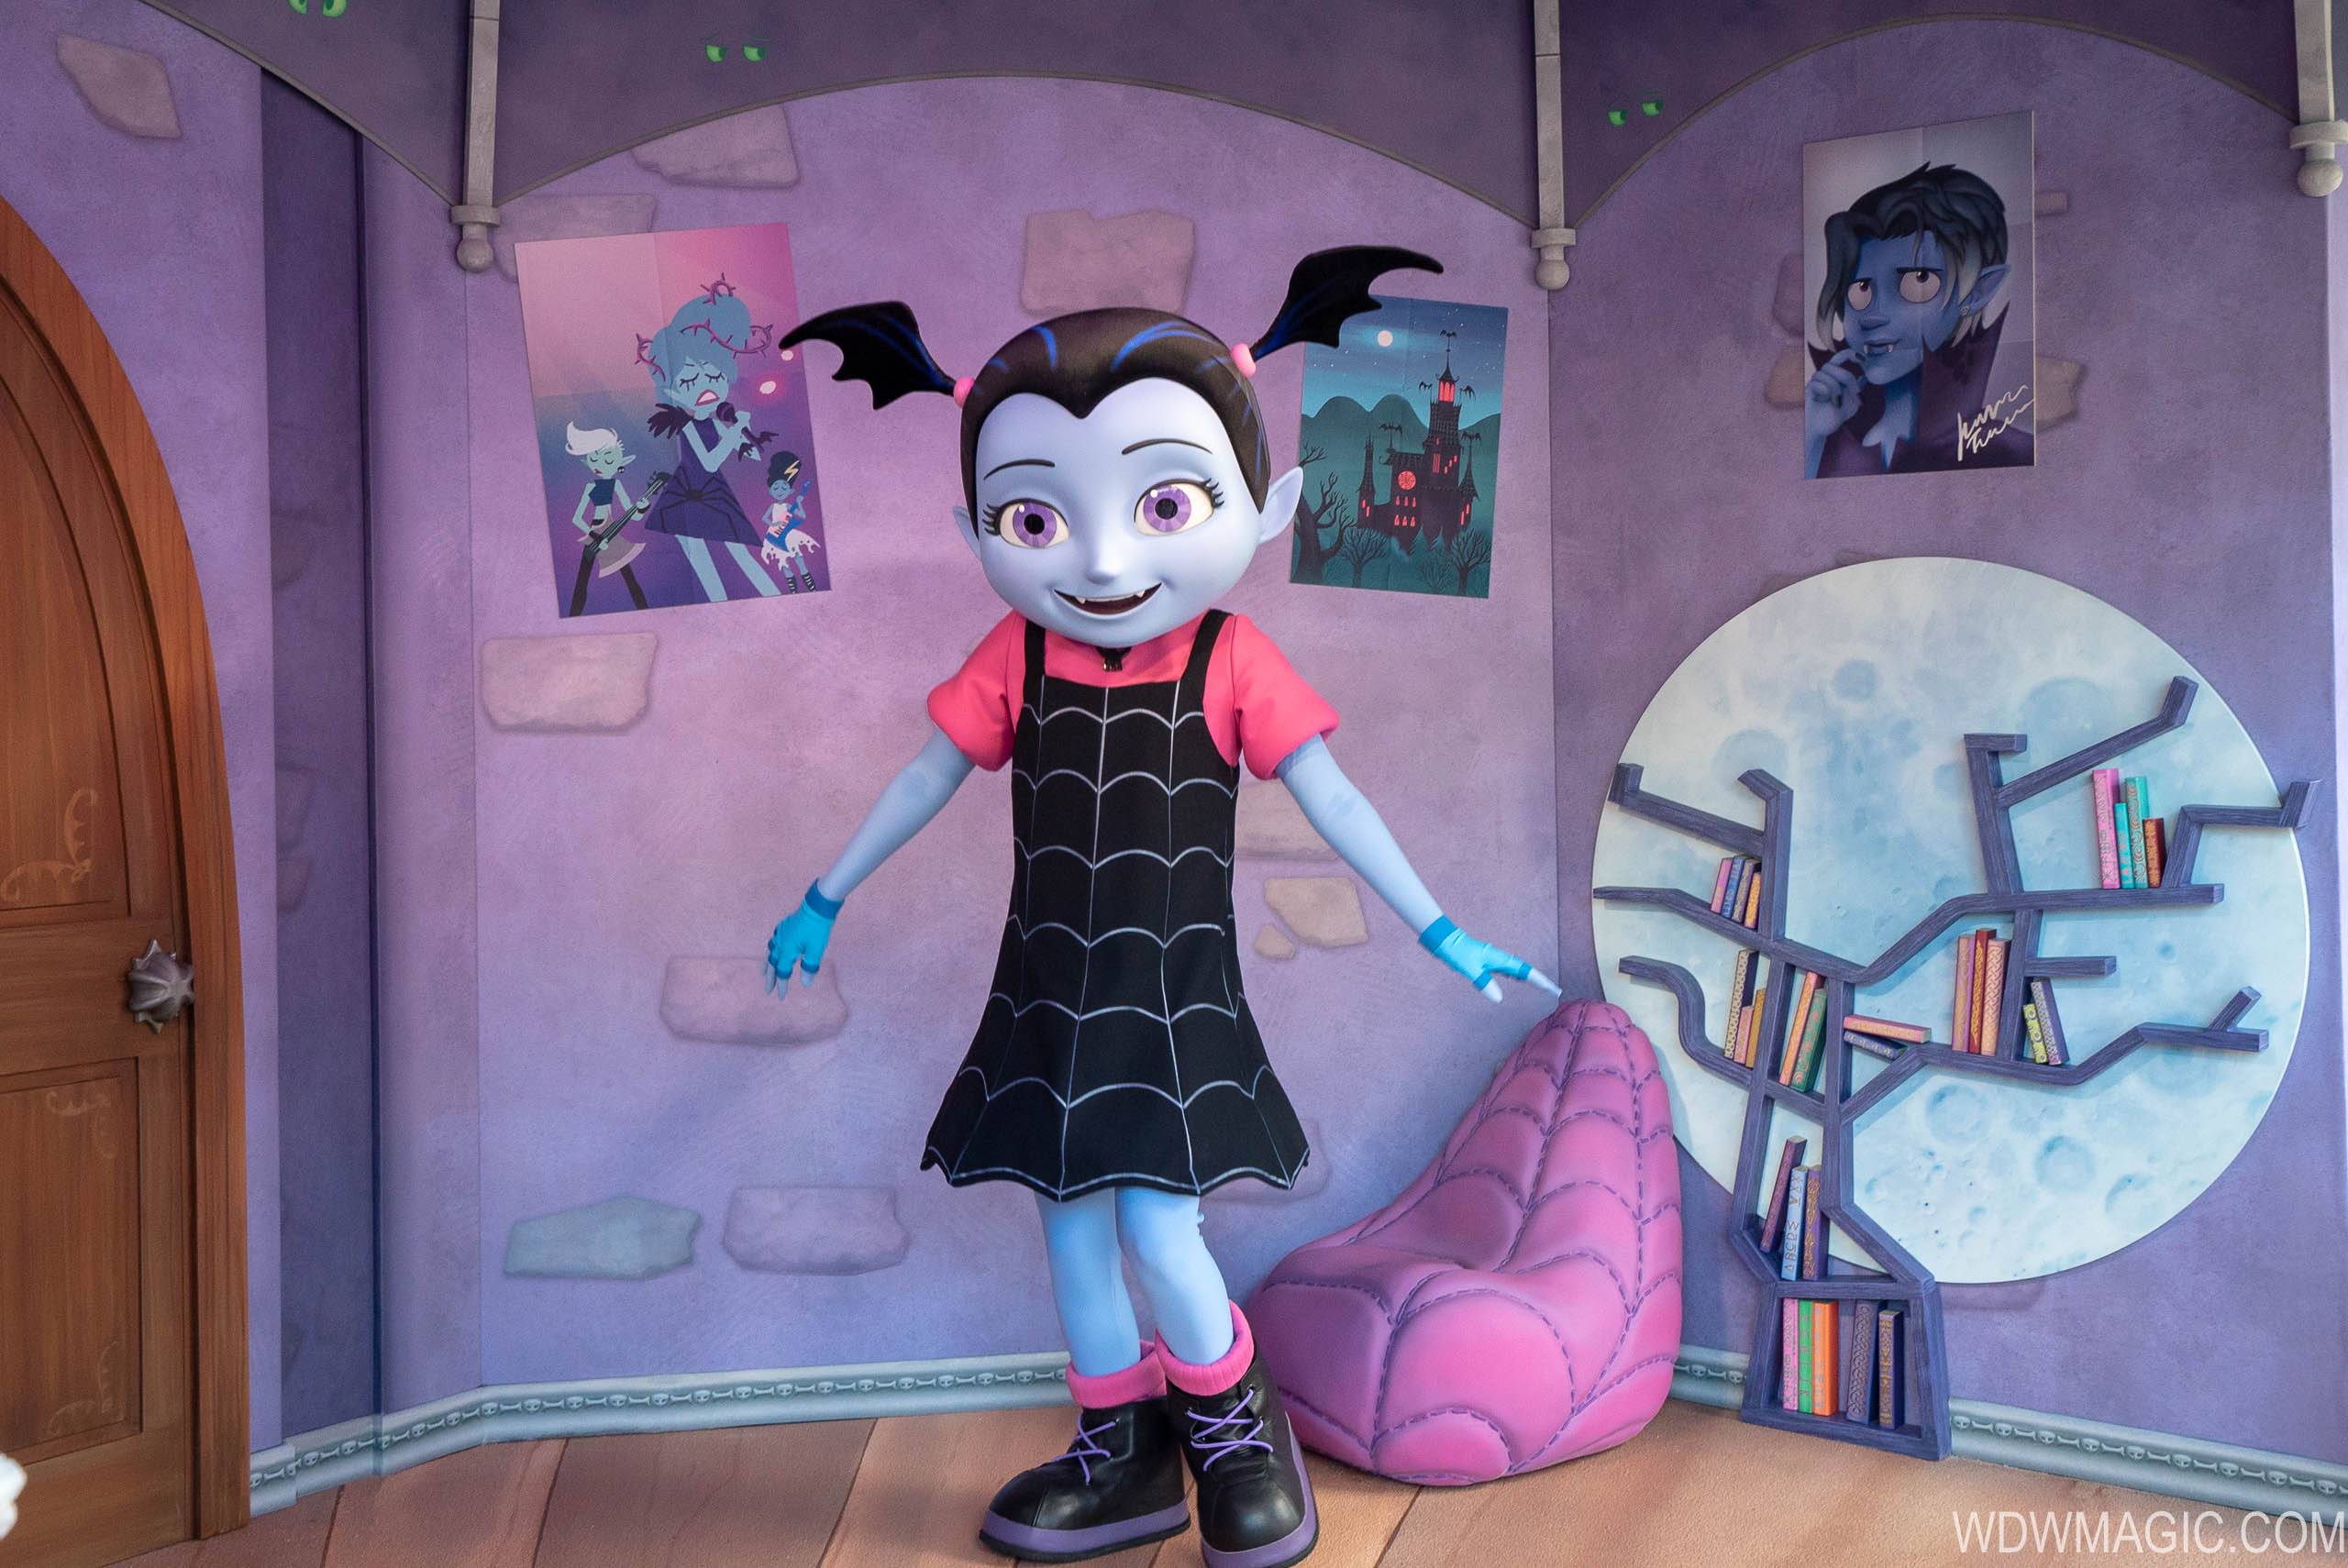 PHOTOS - Vampirina meet and greet now open at Disney's Hollywood Studios